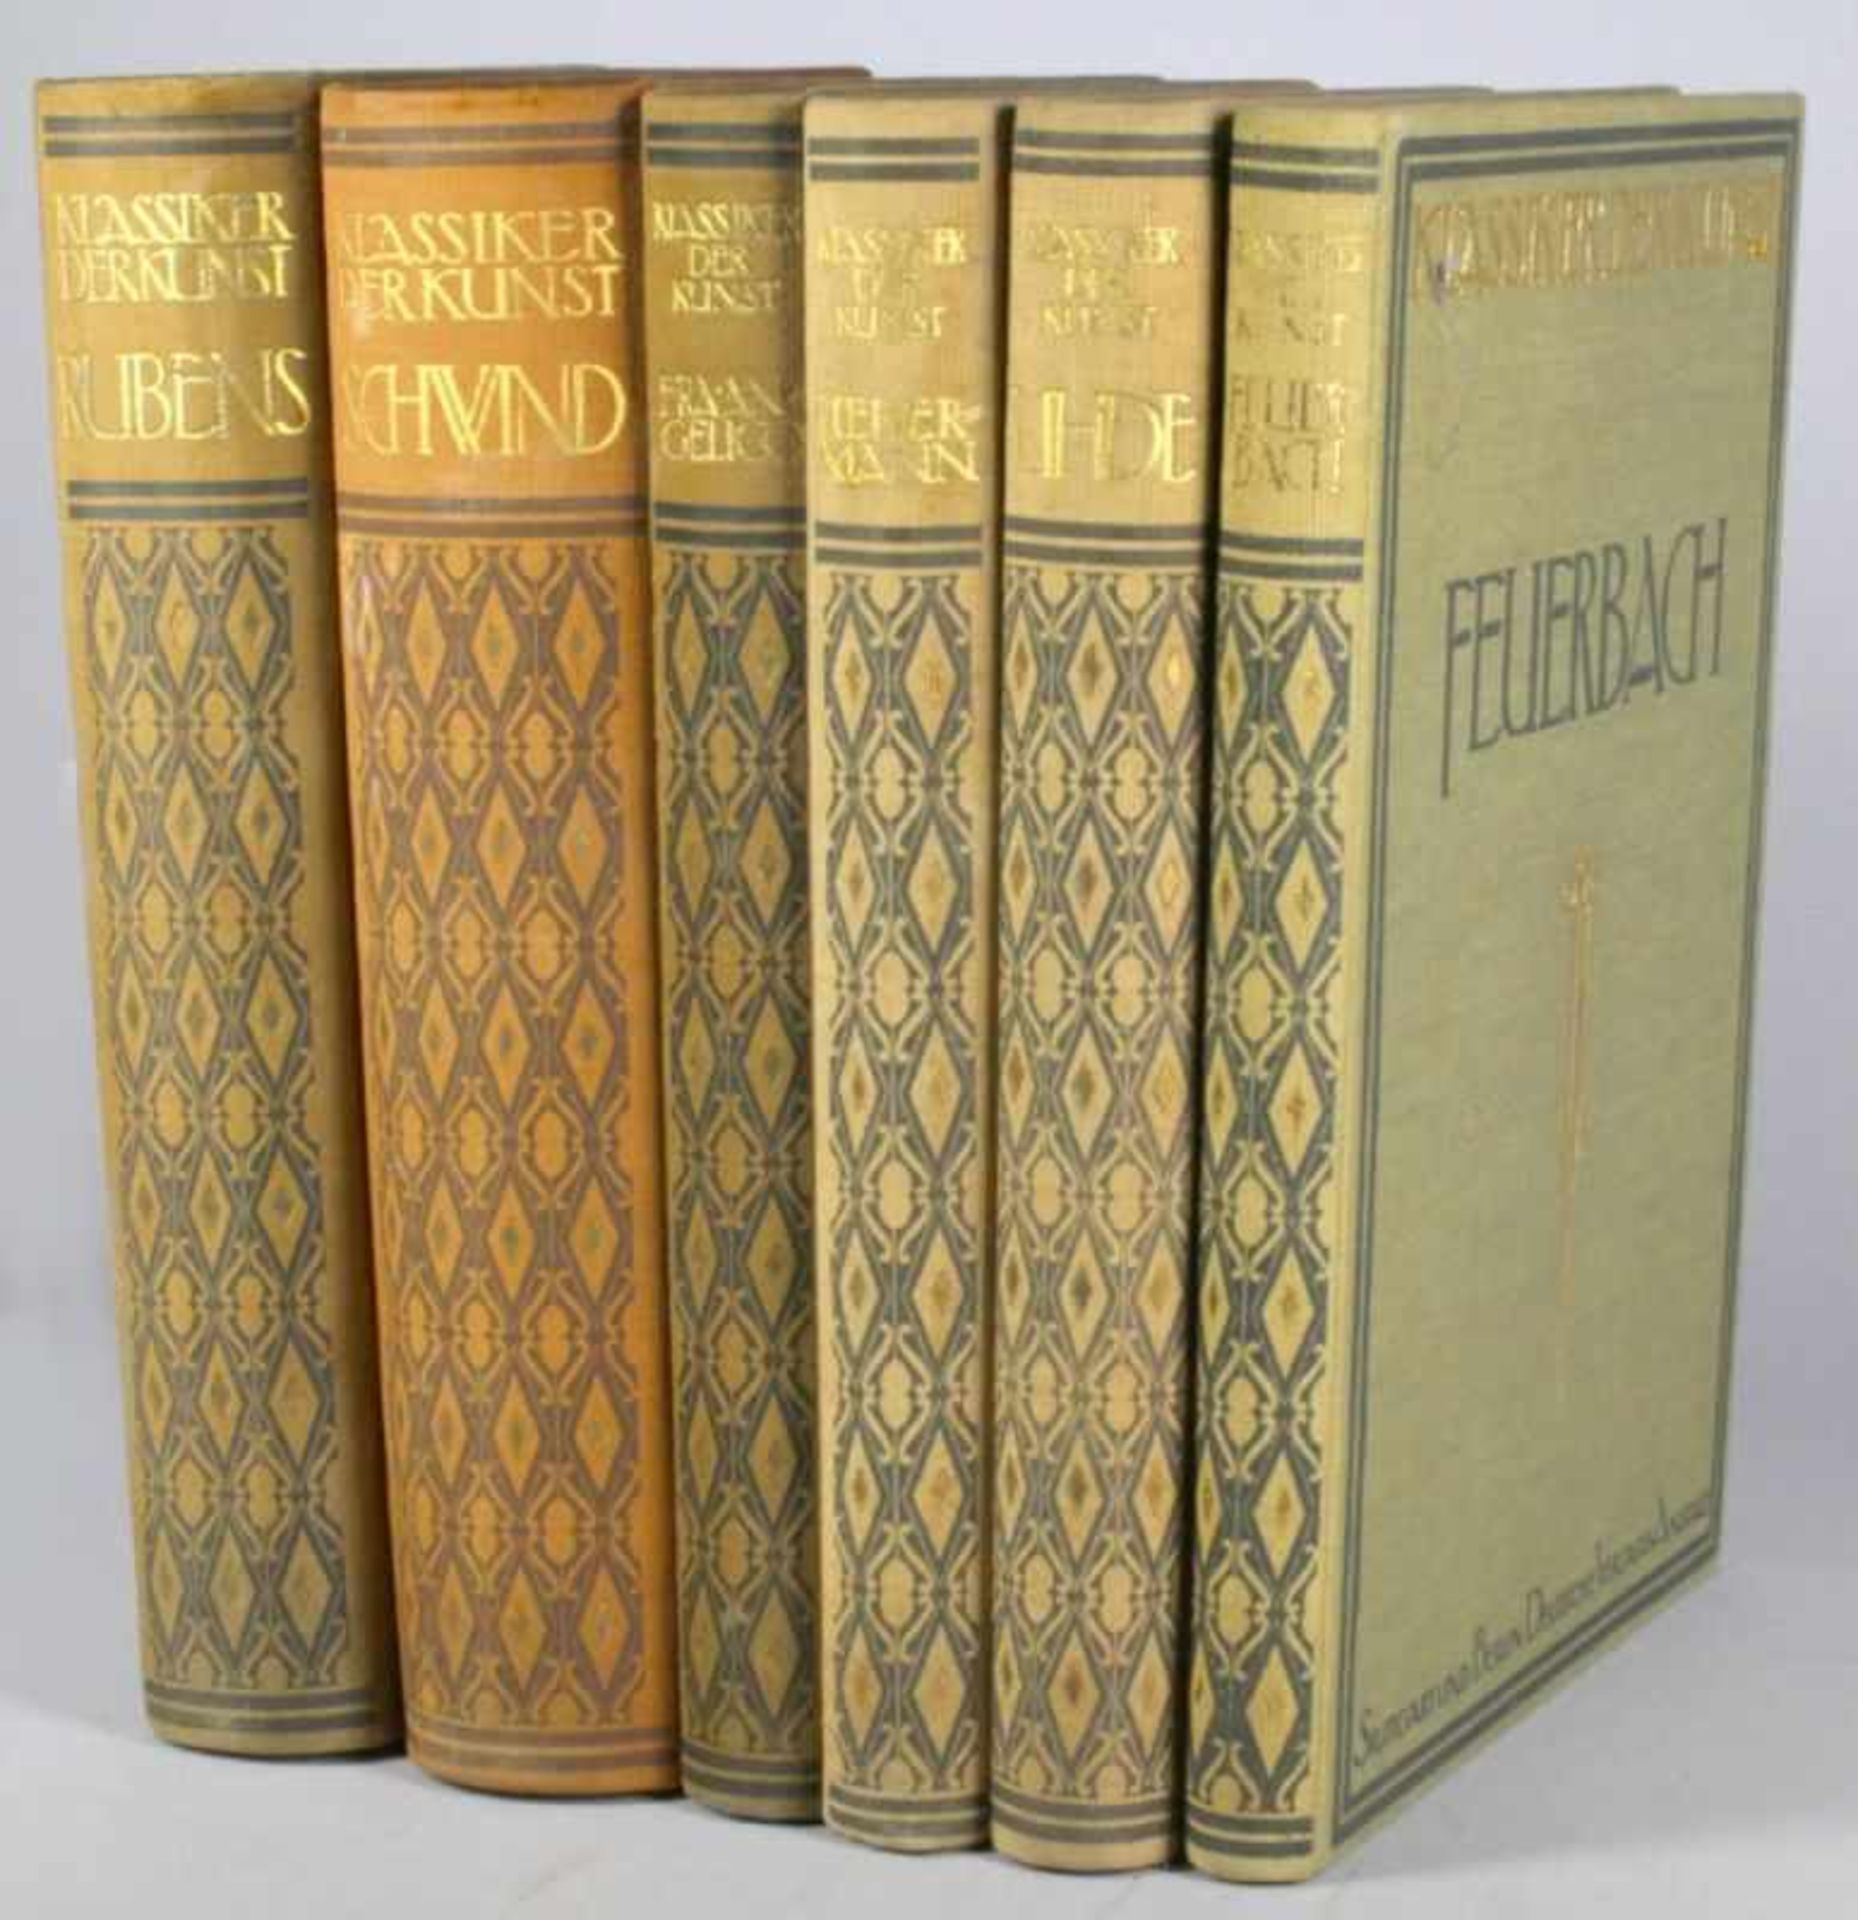 Sechs Bücher, Klassiker der Kunst, unterschiedliche Künstler, 1911, gebrauchter Zustand